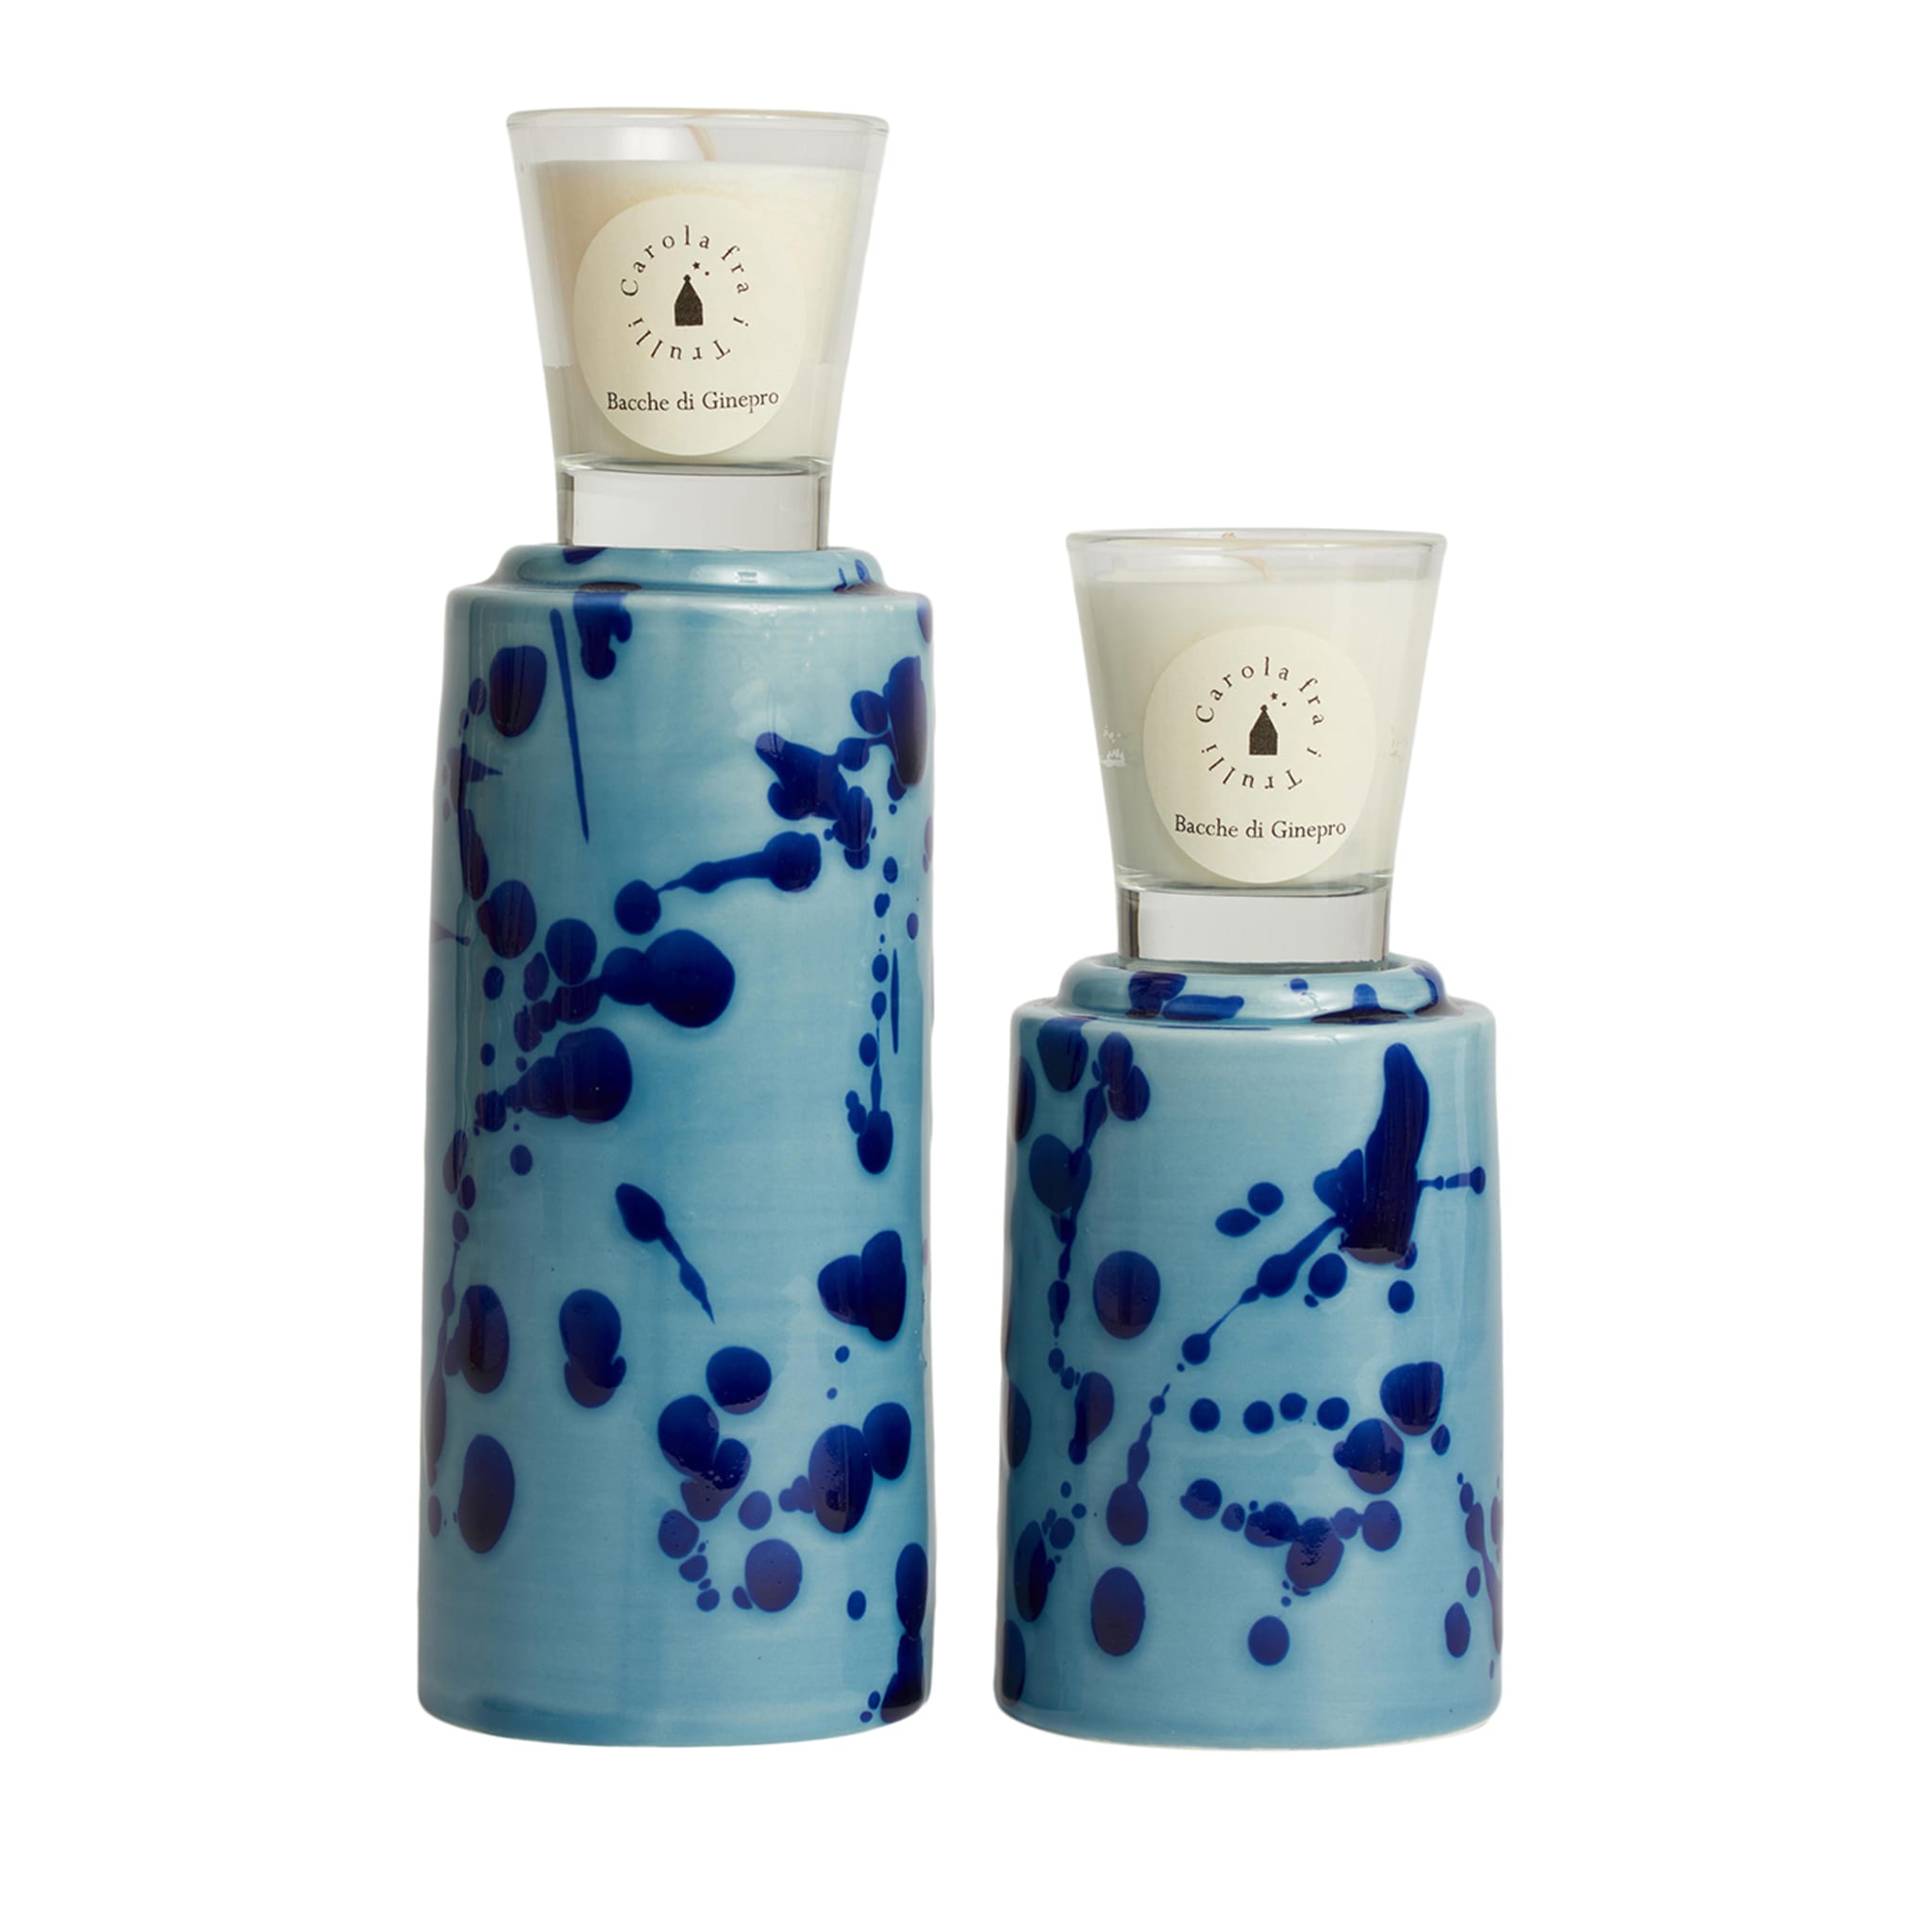 Tótem Celeste y Azul con Vela Perfumada Fragancia Agrumeto  - Vista principal